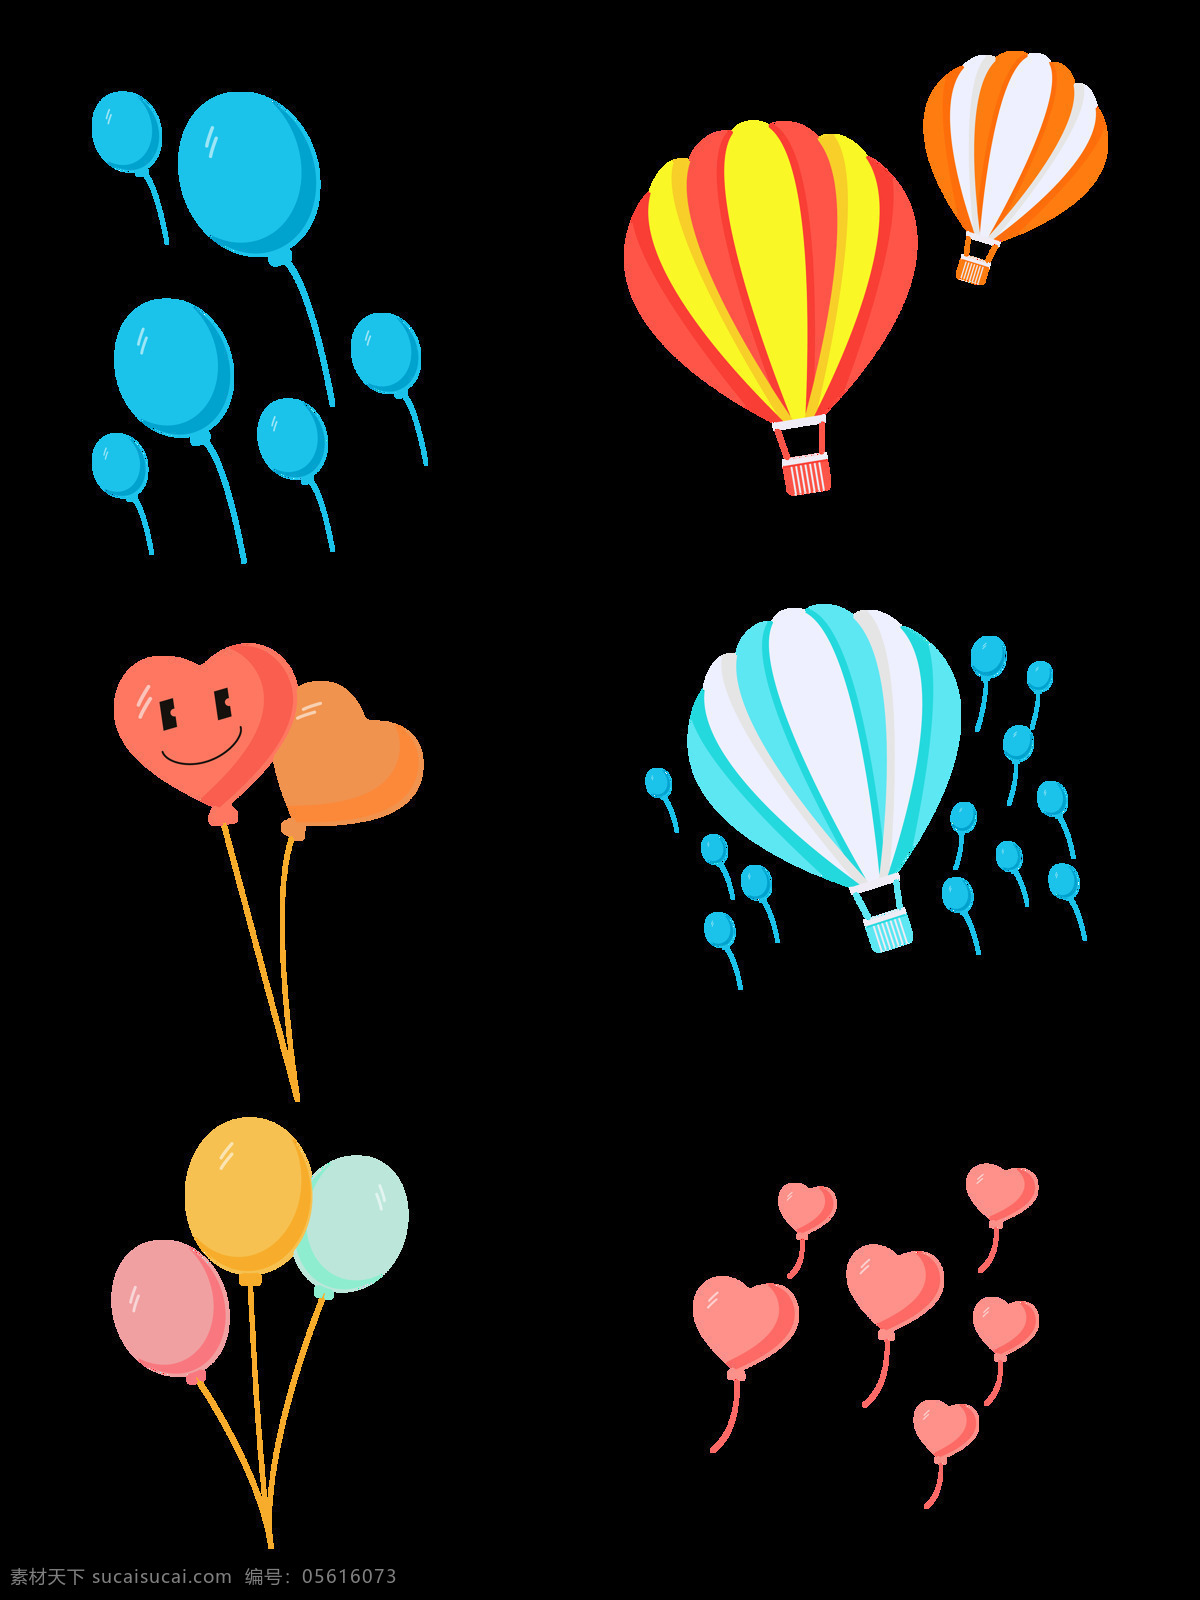 气球图片 气球 免扣气球 气球素材 彩色气球 气球png 桃心气球 设计素材 png元素 共享素材